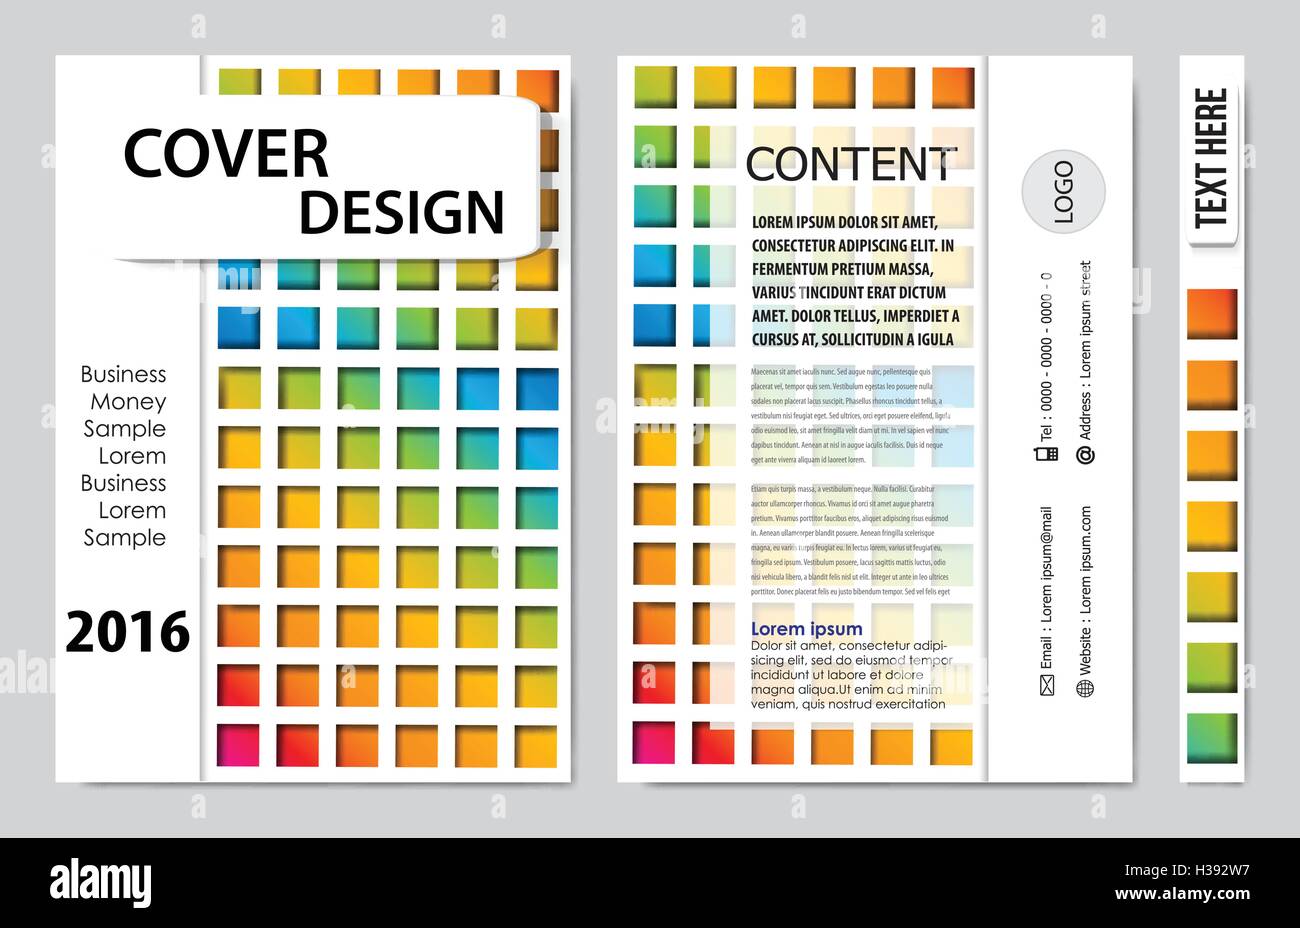 Buch Prasentation Layout Design Vorlage Hintergrund Zu Decken Stock Vektorgrafik Alamy